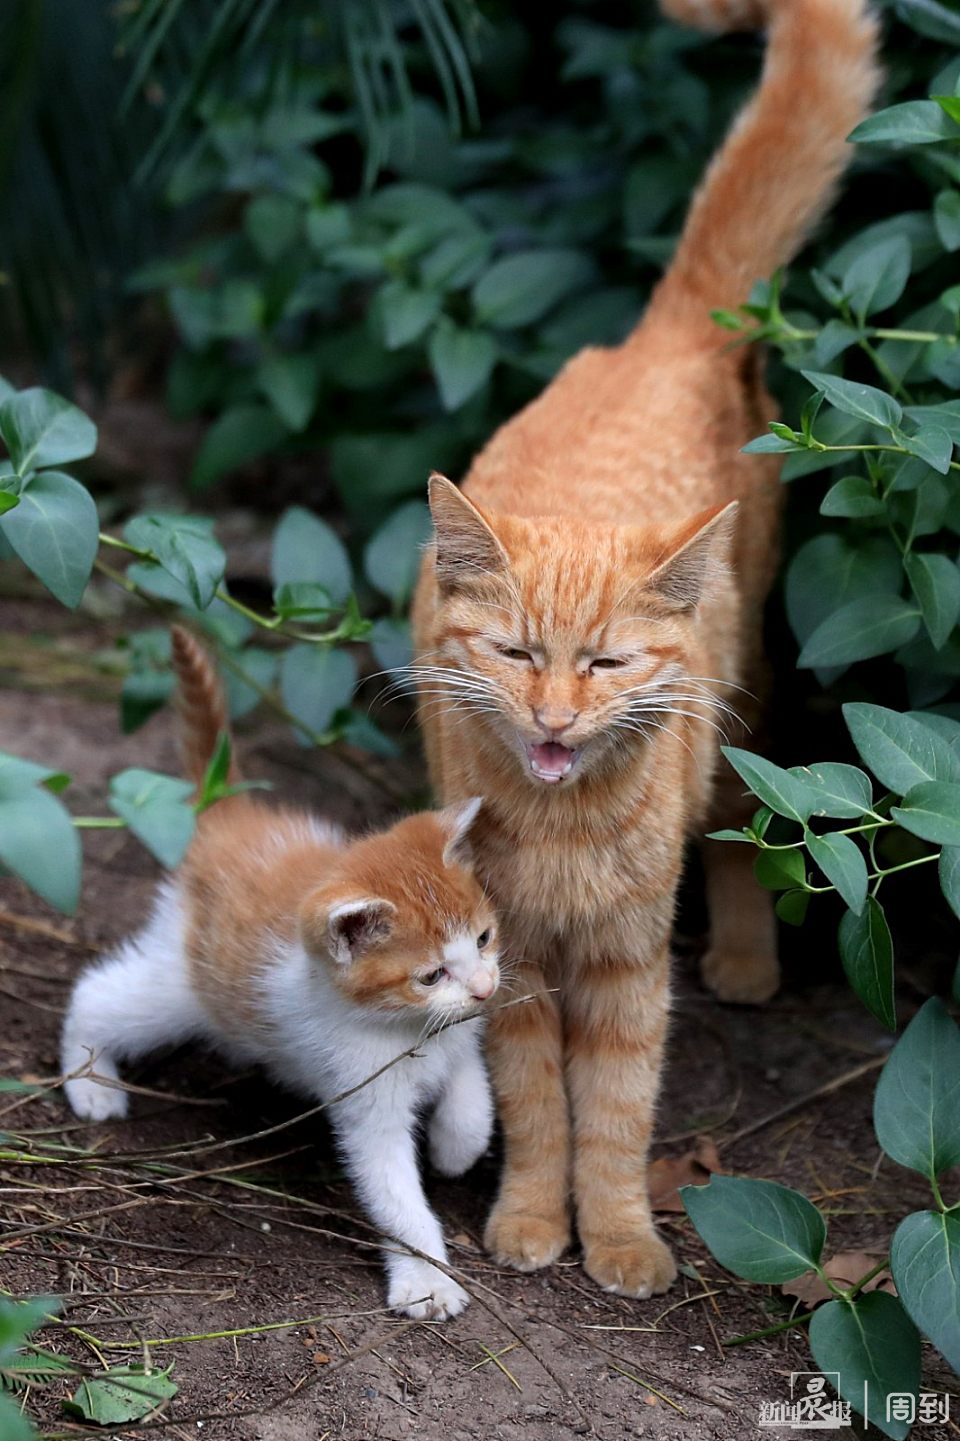 静安公园:猫妈妈与三只萌萌的小奶猫 